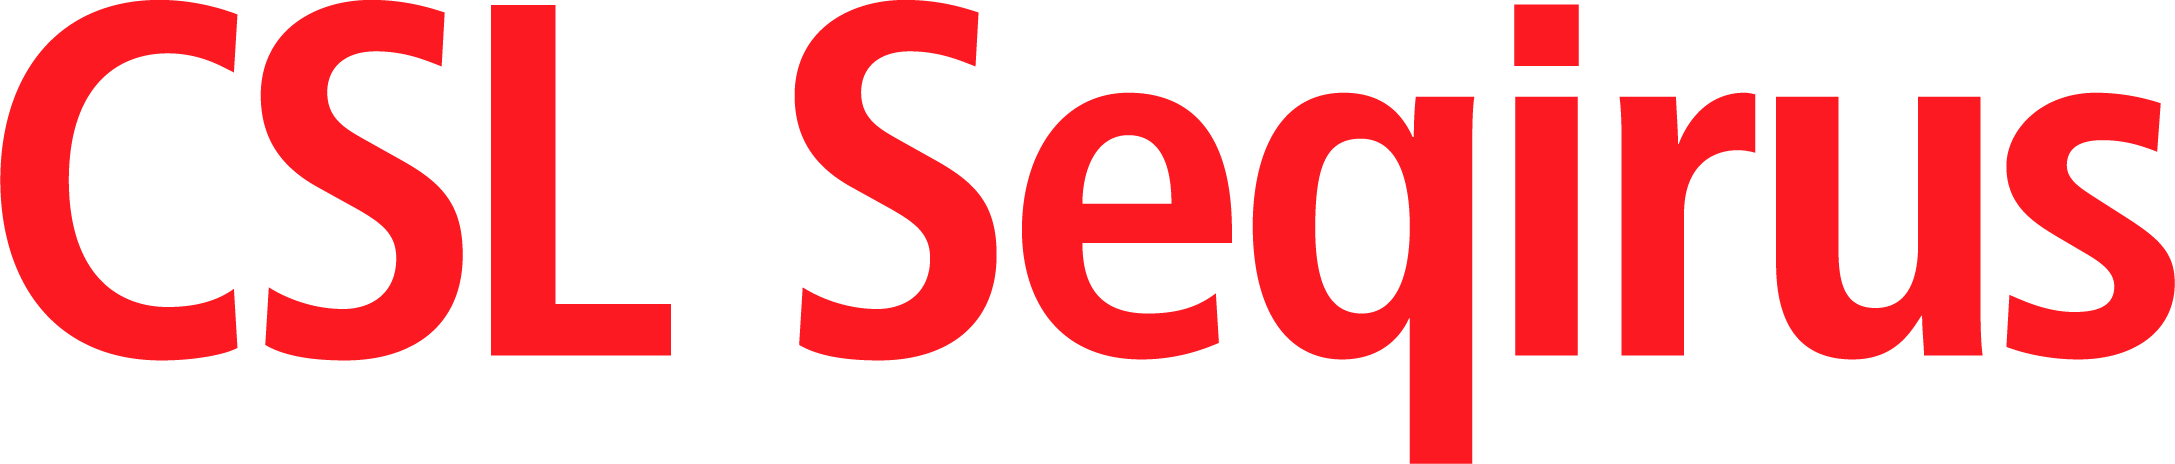 CSL Seqirus Logo Red